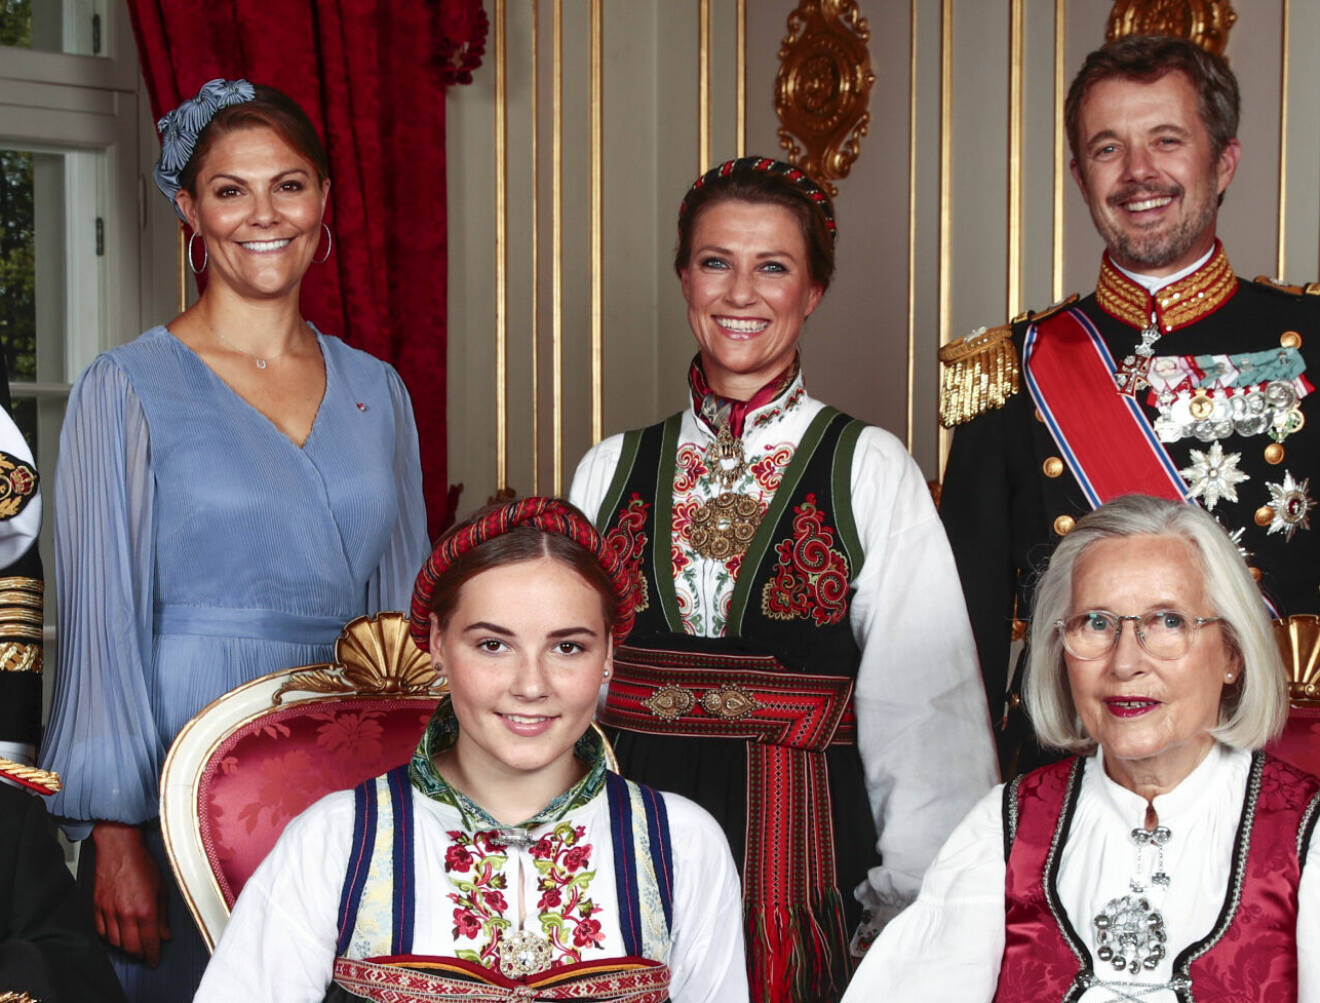 Kronprinsessan Victoria på Ingrid Alexandras konfirmation i hårsmycke eller headpiece från Örjan Jakobsson Parant Couture